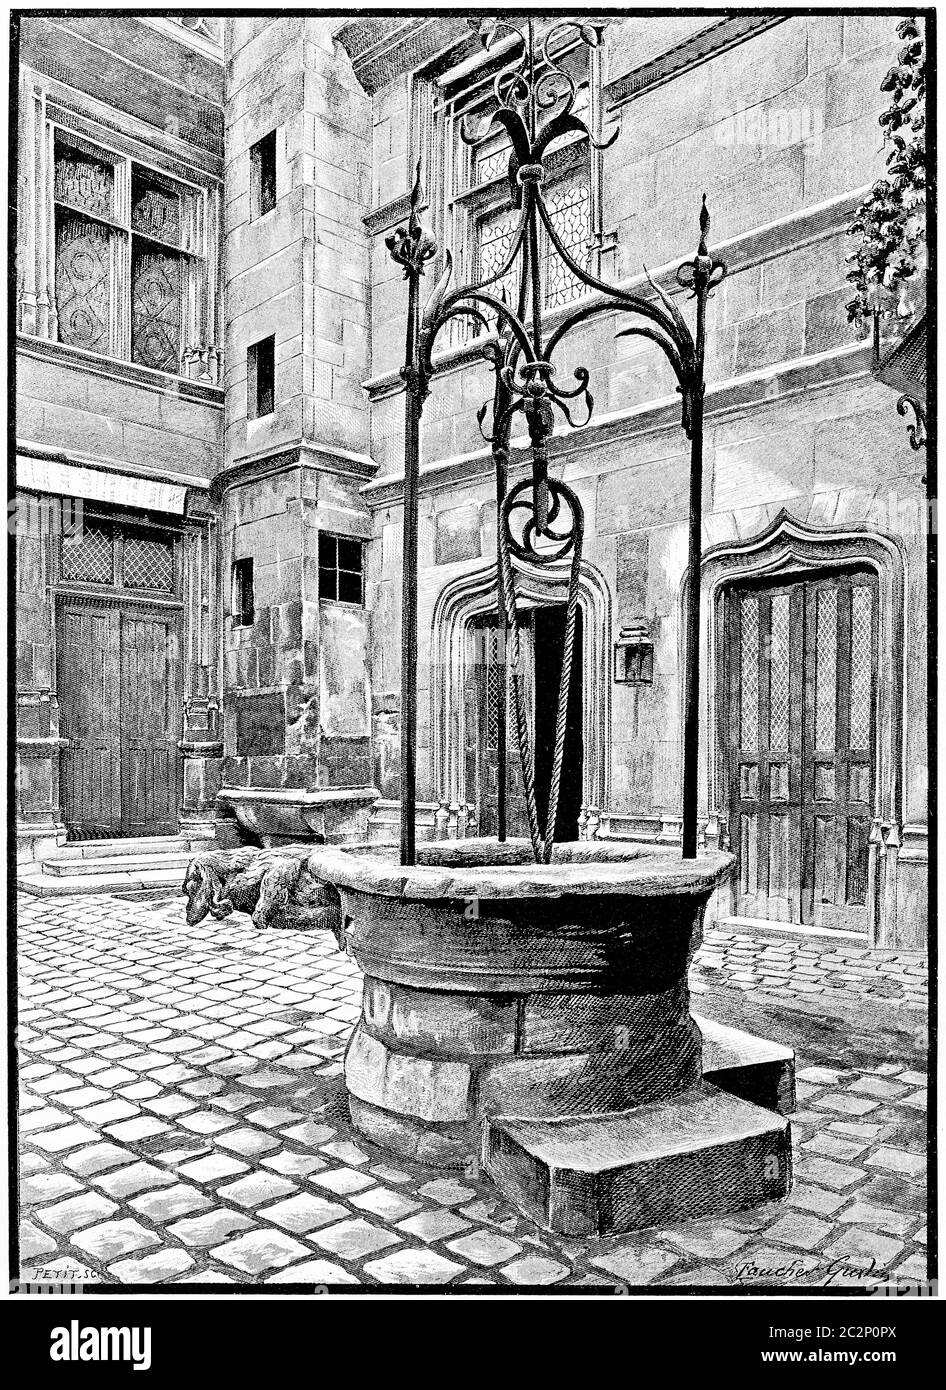 Le vieux puits de l'entrée de la cour, illustration gravée d'époque. Paris - Auguste VITU – 1890. Banque D'Images